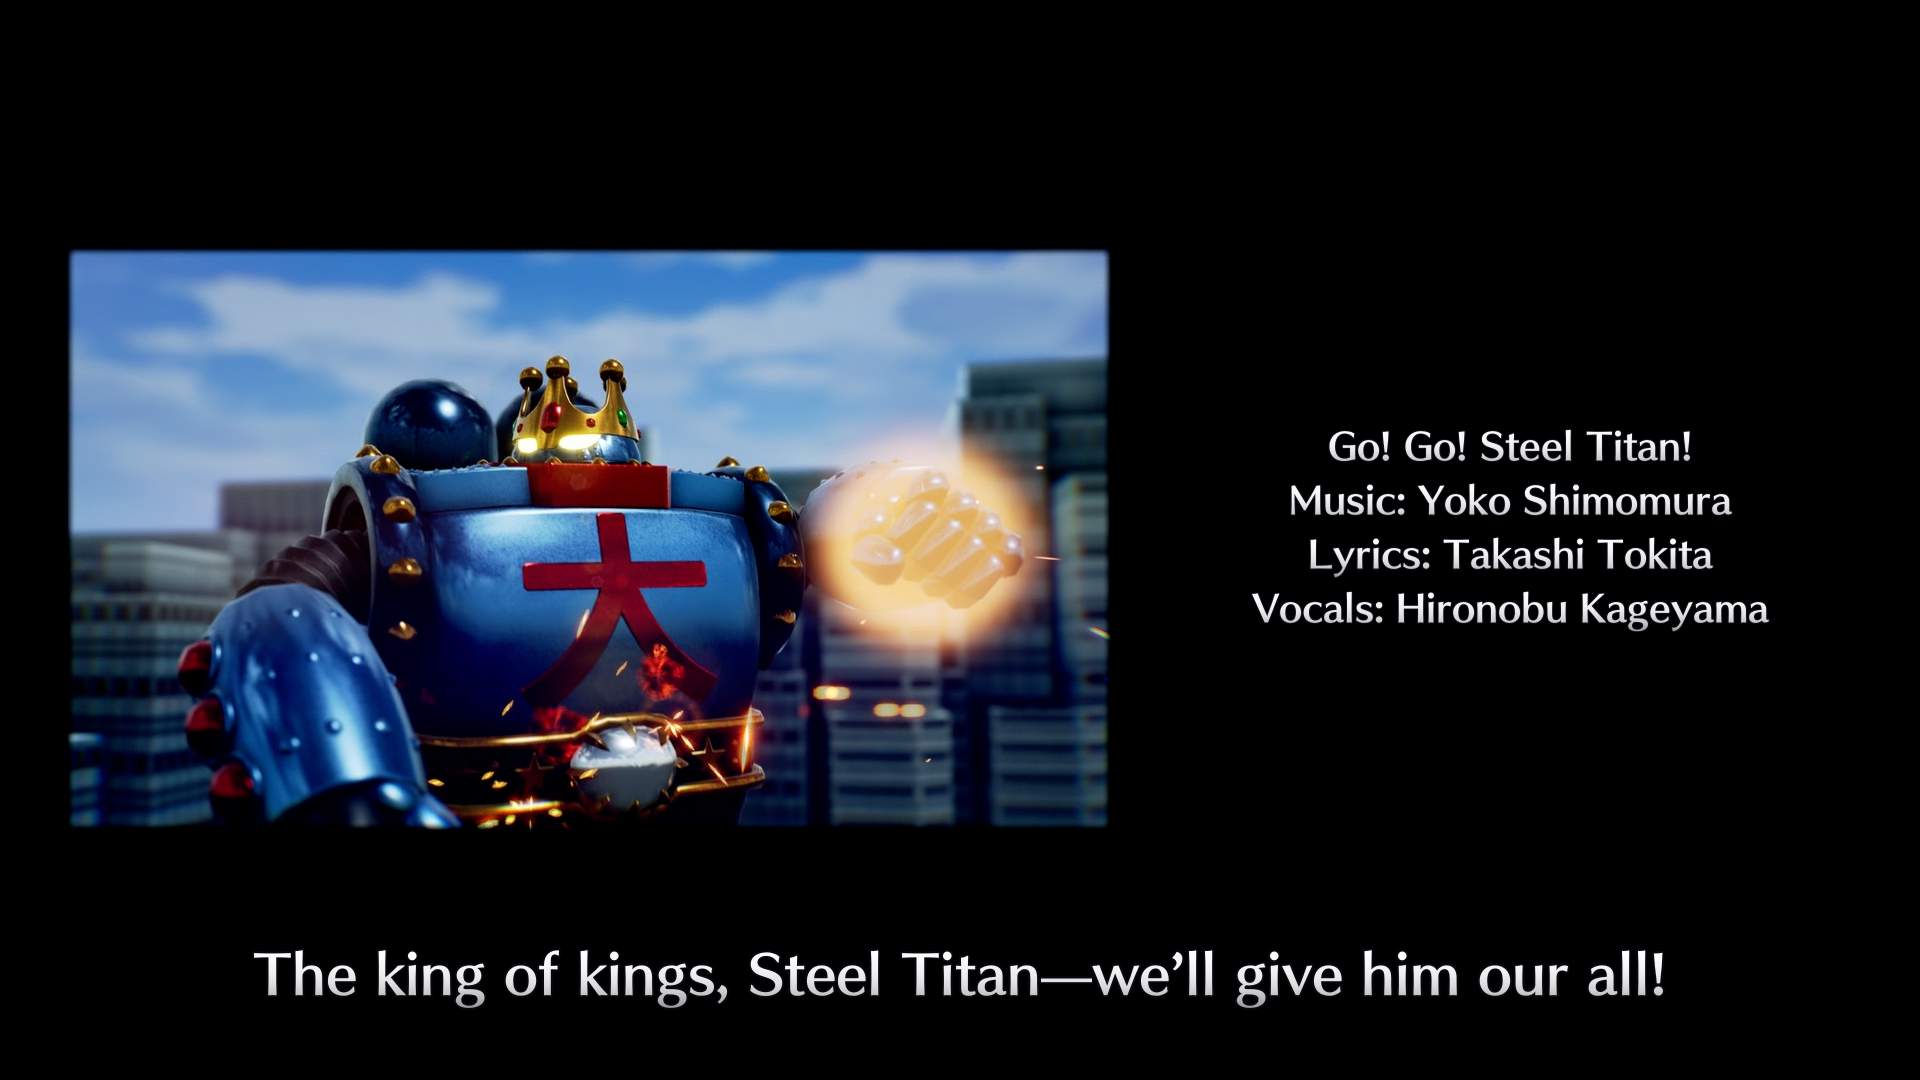 Una imagen del titán de acero con un puño brillante, al lado de algunos créditos.